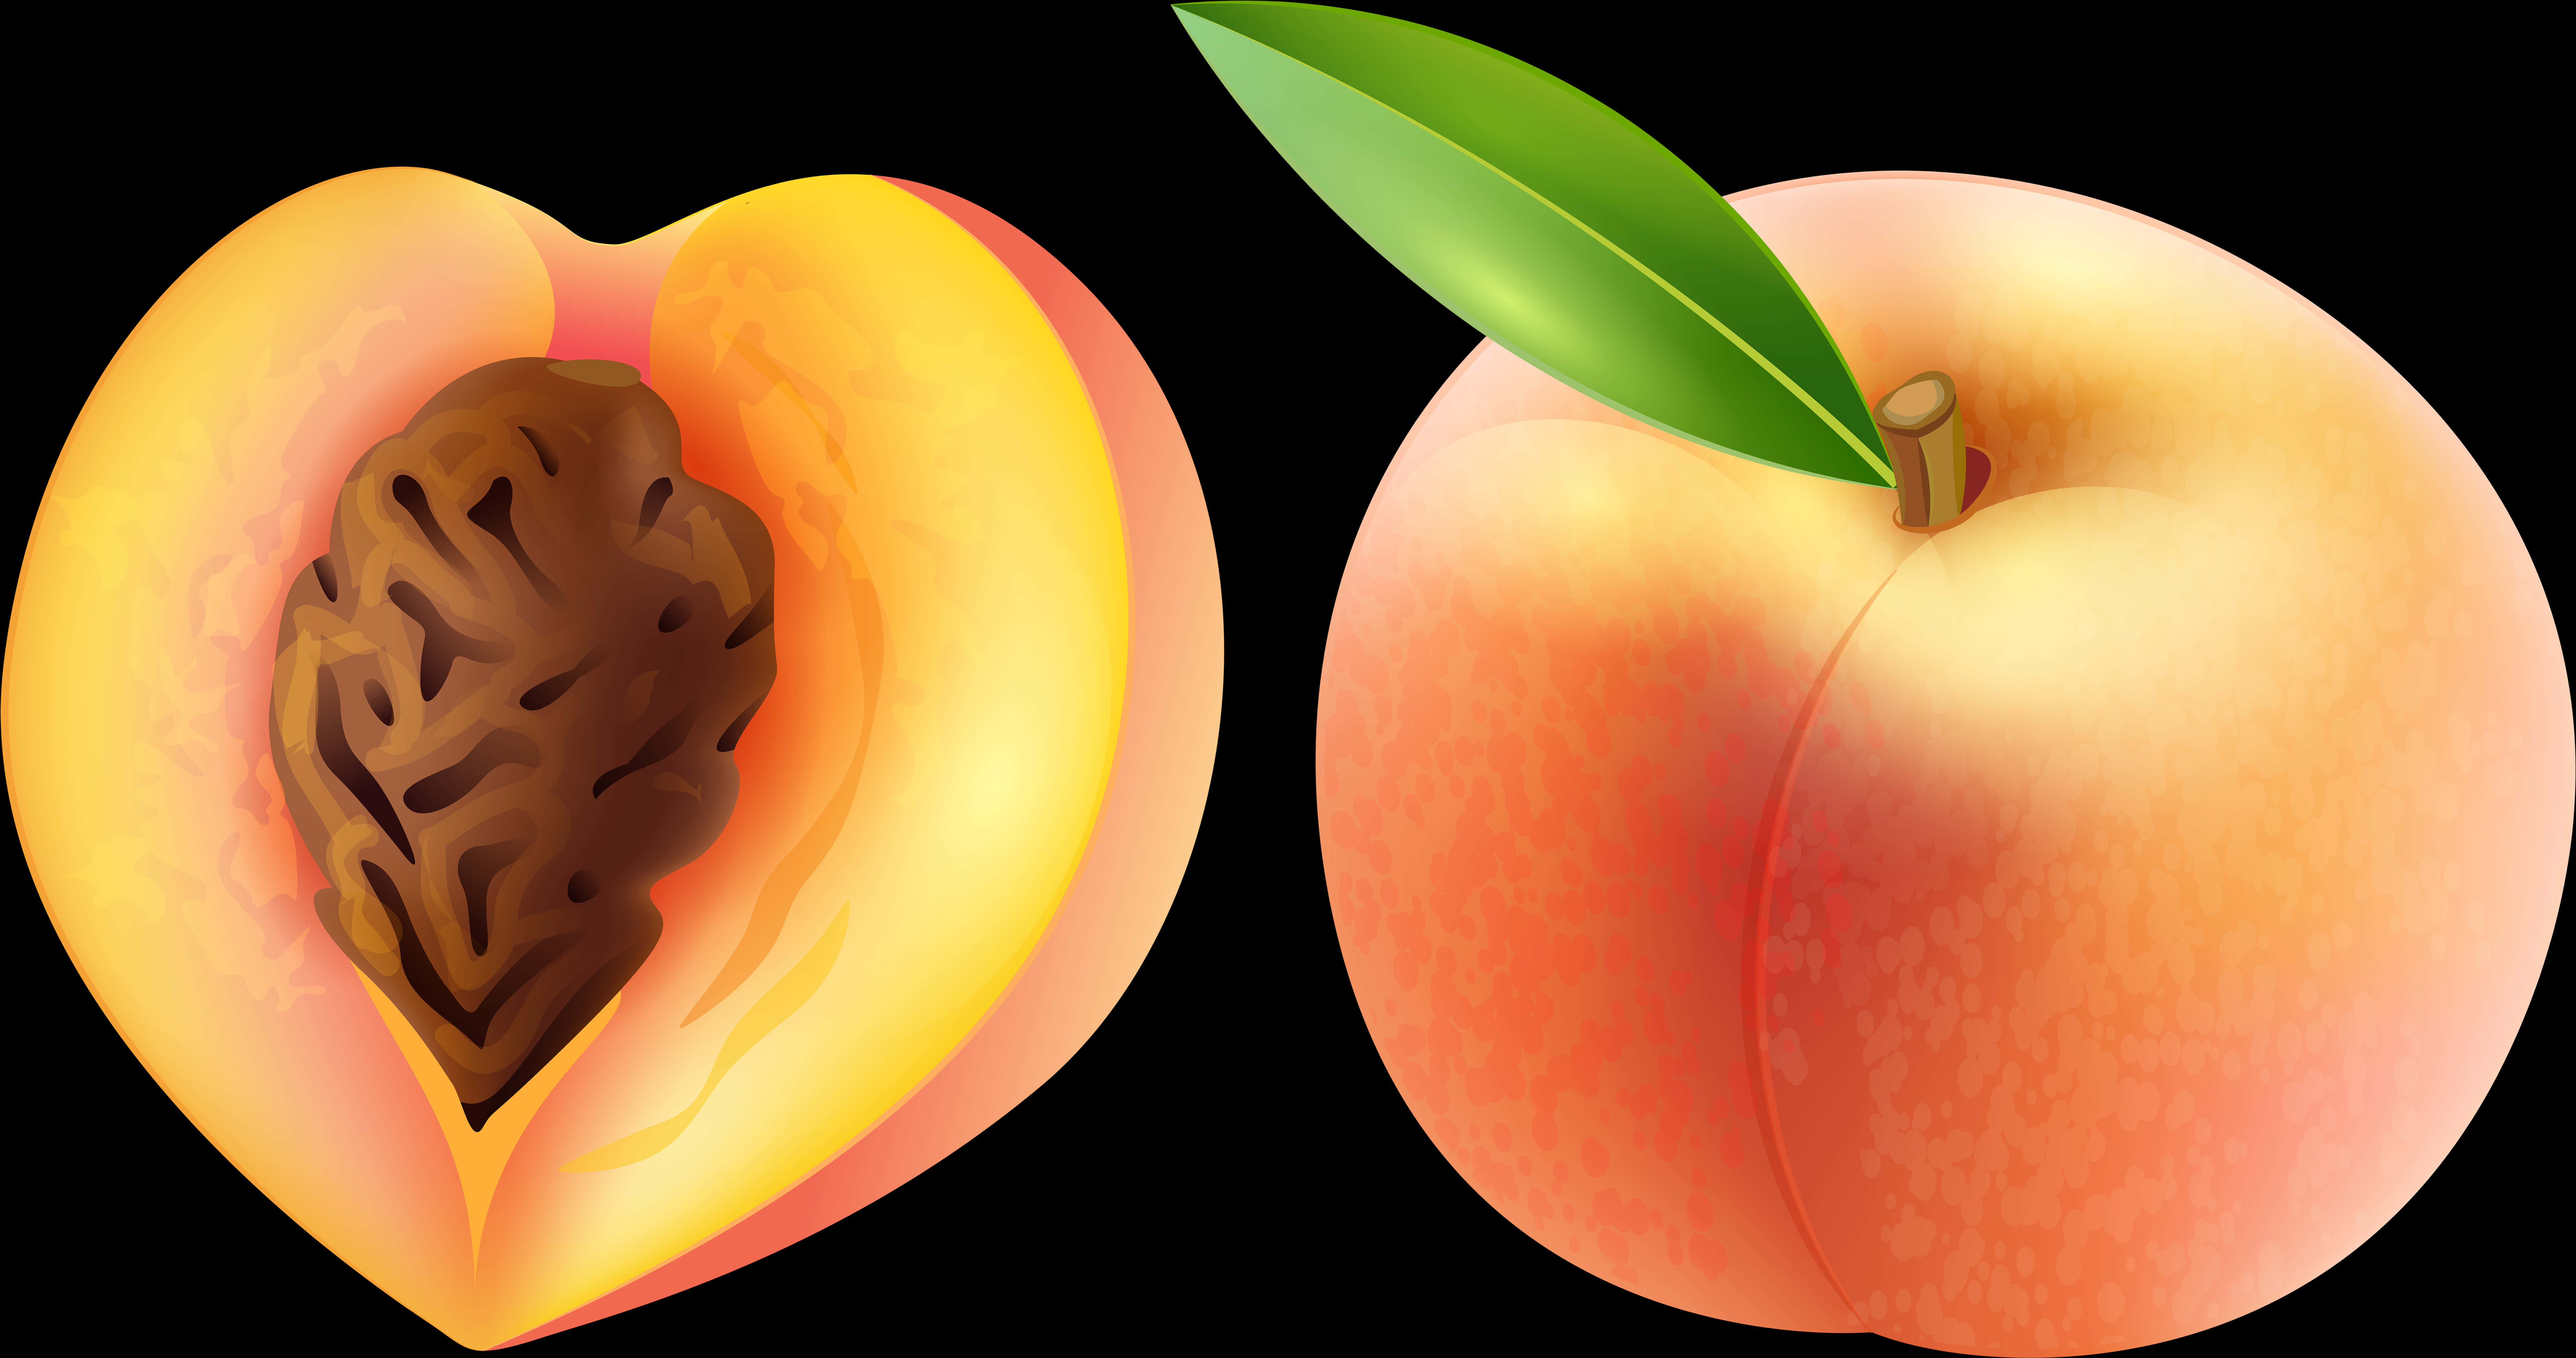 A Peach Cut In Half